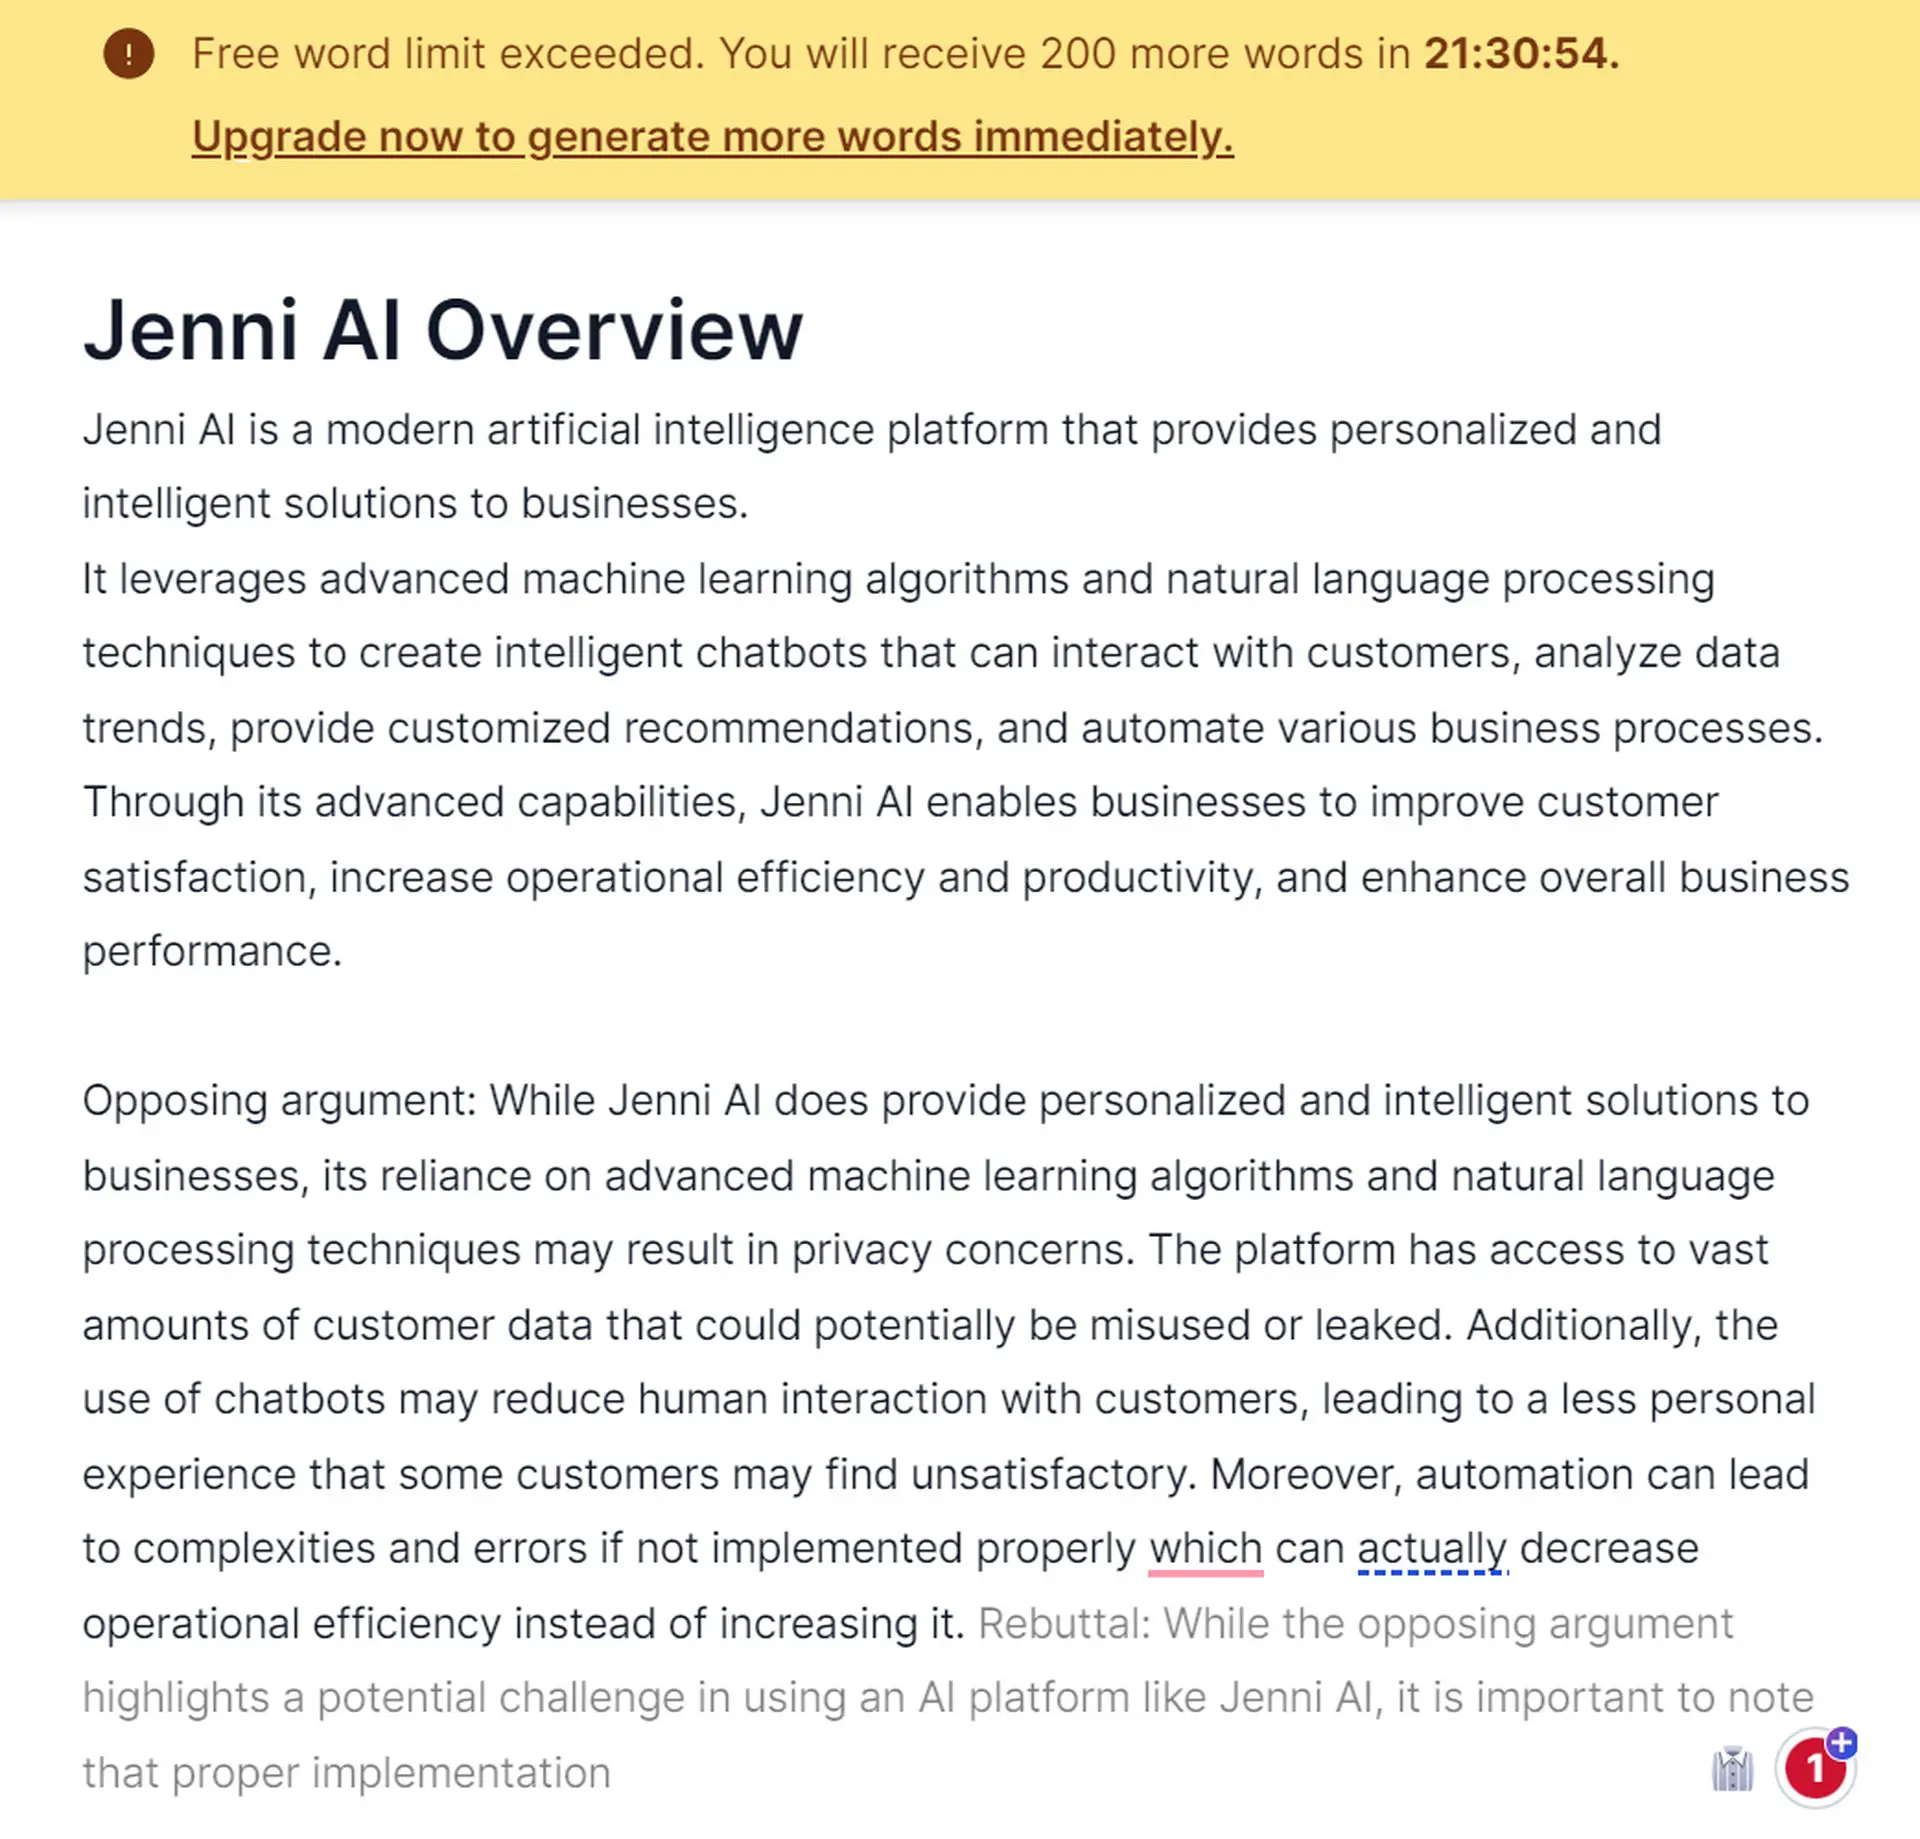 什么是 Jenni AI 以及如何使用它？ 如果您不想付费，可以通过示例了解其功能并发现免费的 Jenni AI 替代品！ 继续阅读...